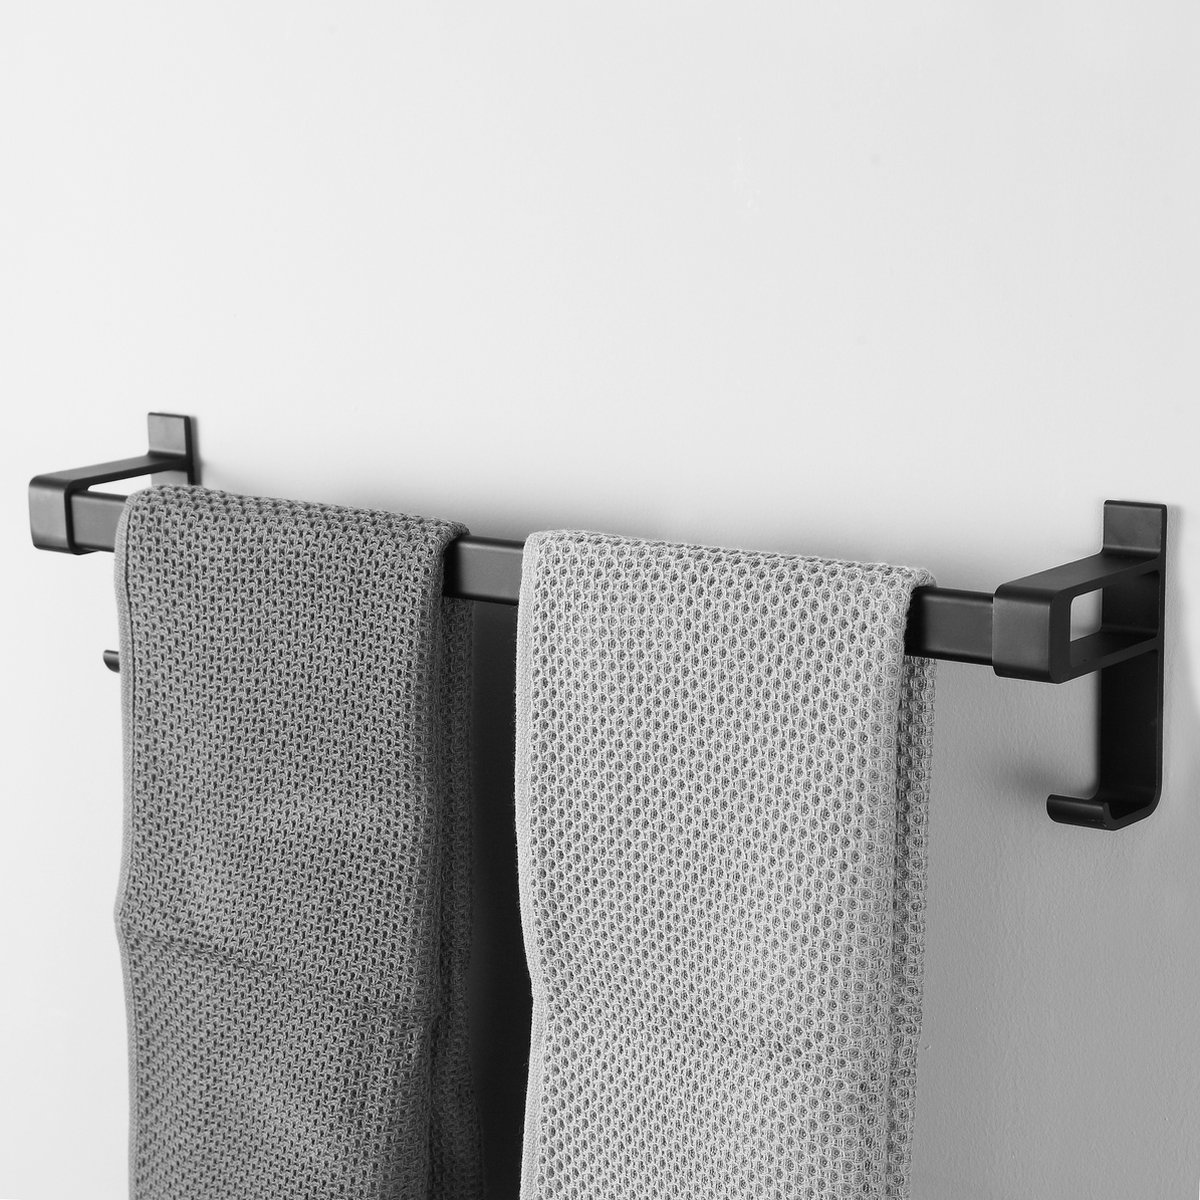 Cgoods handdoekrek zonder boren - handdoekrek badkamer - handdoekhouder - handdoekstang - 60CM